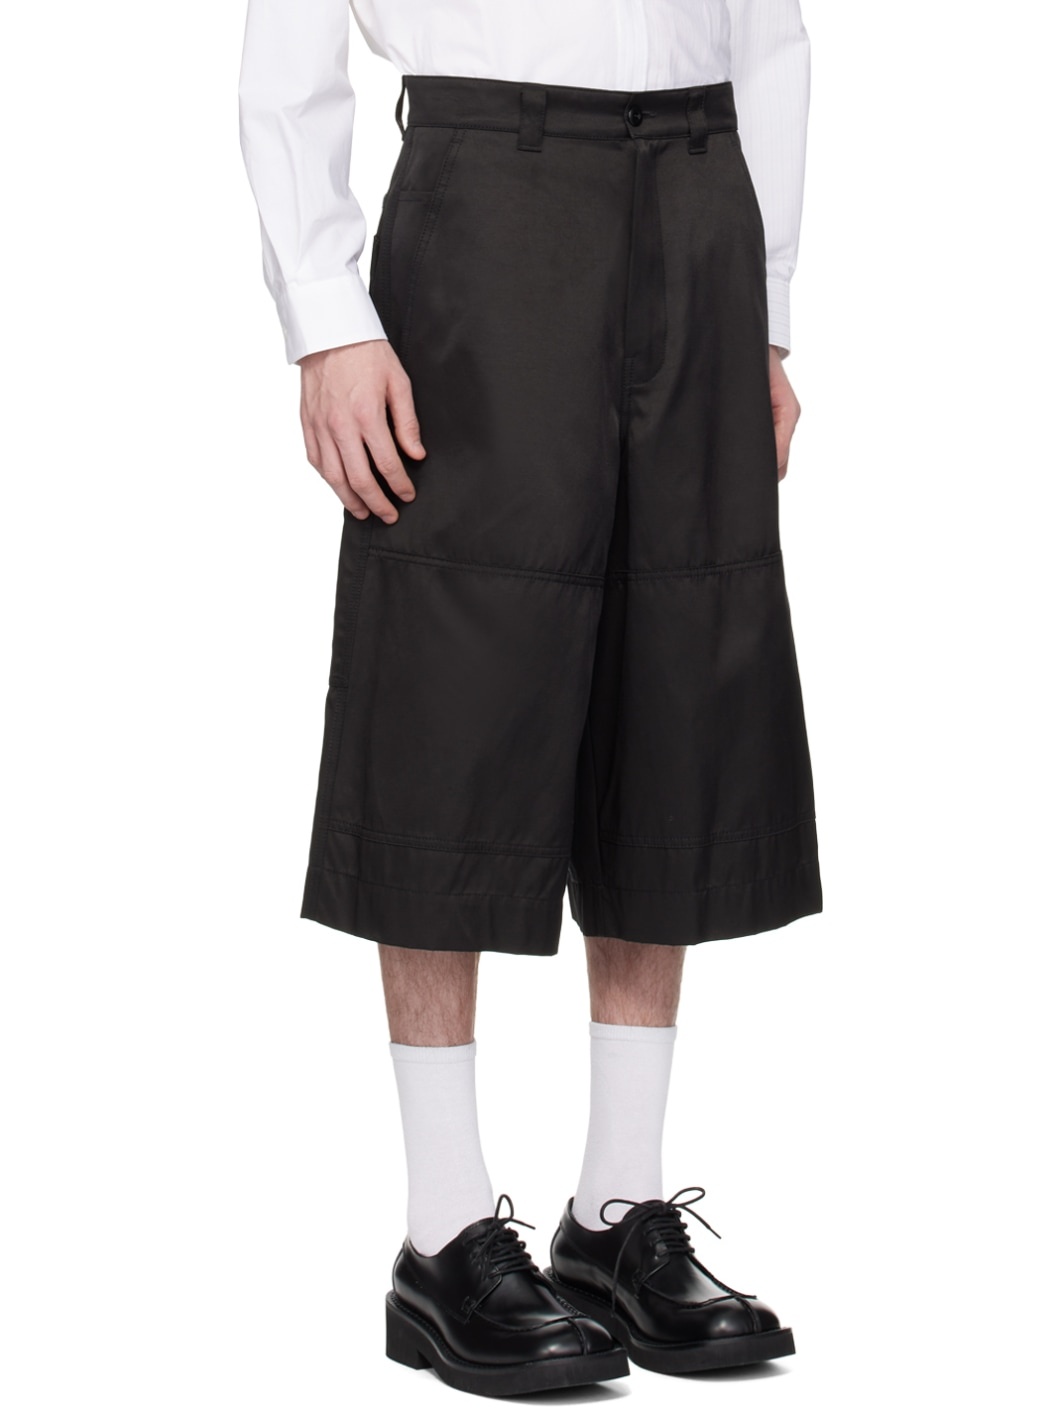 Black Paneled Shorts - 2